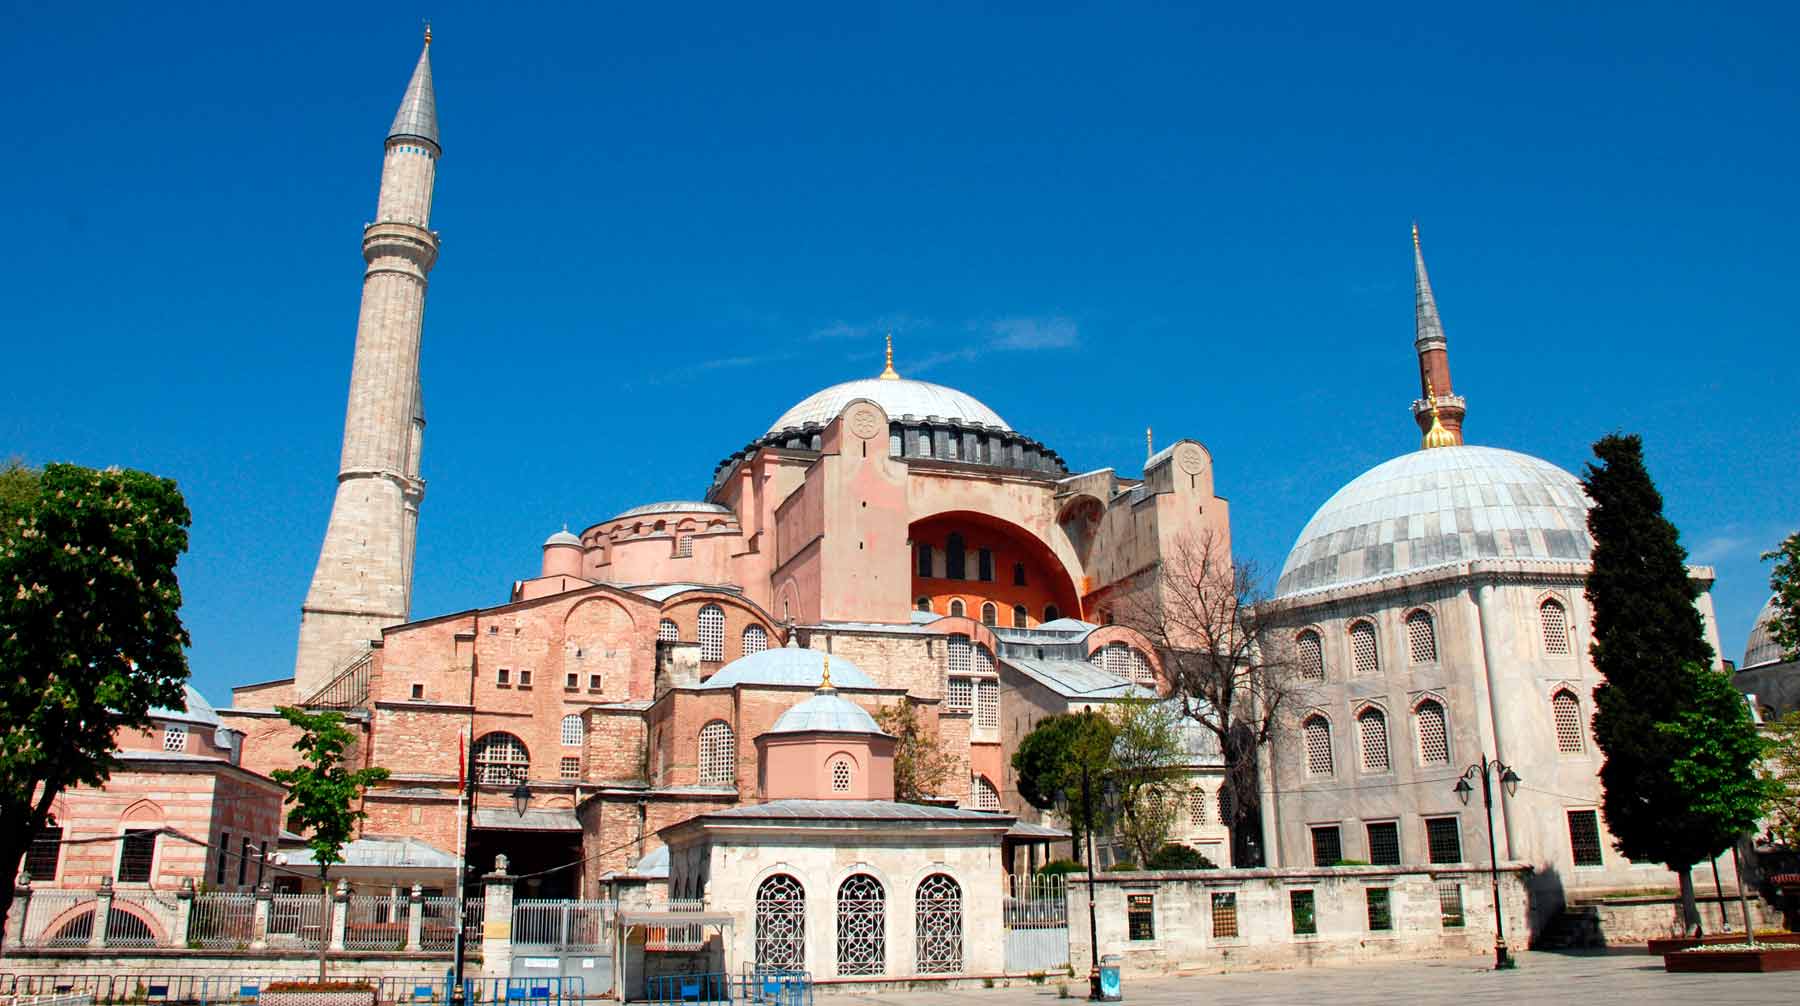 Ранее патриарх Кирилл заявил, что восстановление мечети в древнем соборе следует расценивать как угрозу христианской цивилизации Фото: © Global Look Press / Tugay Kutlu